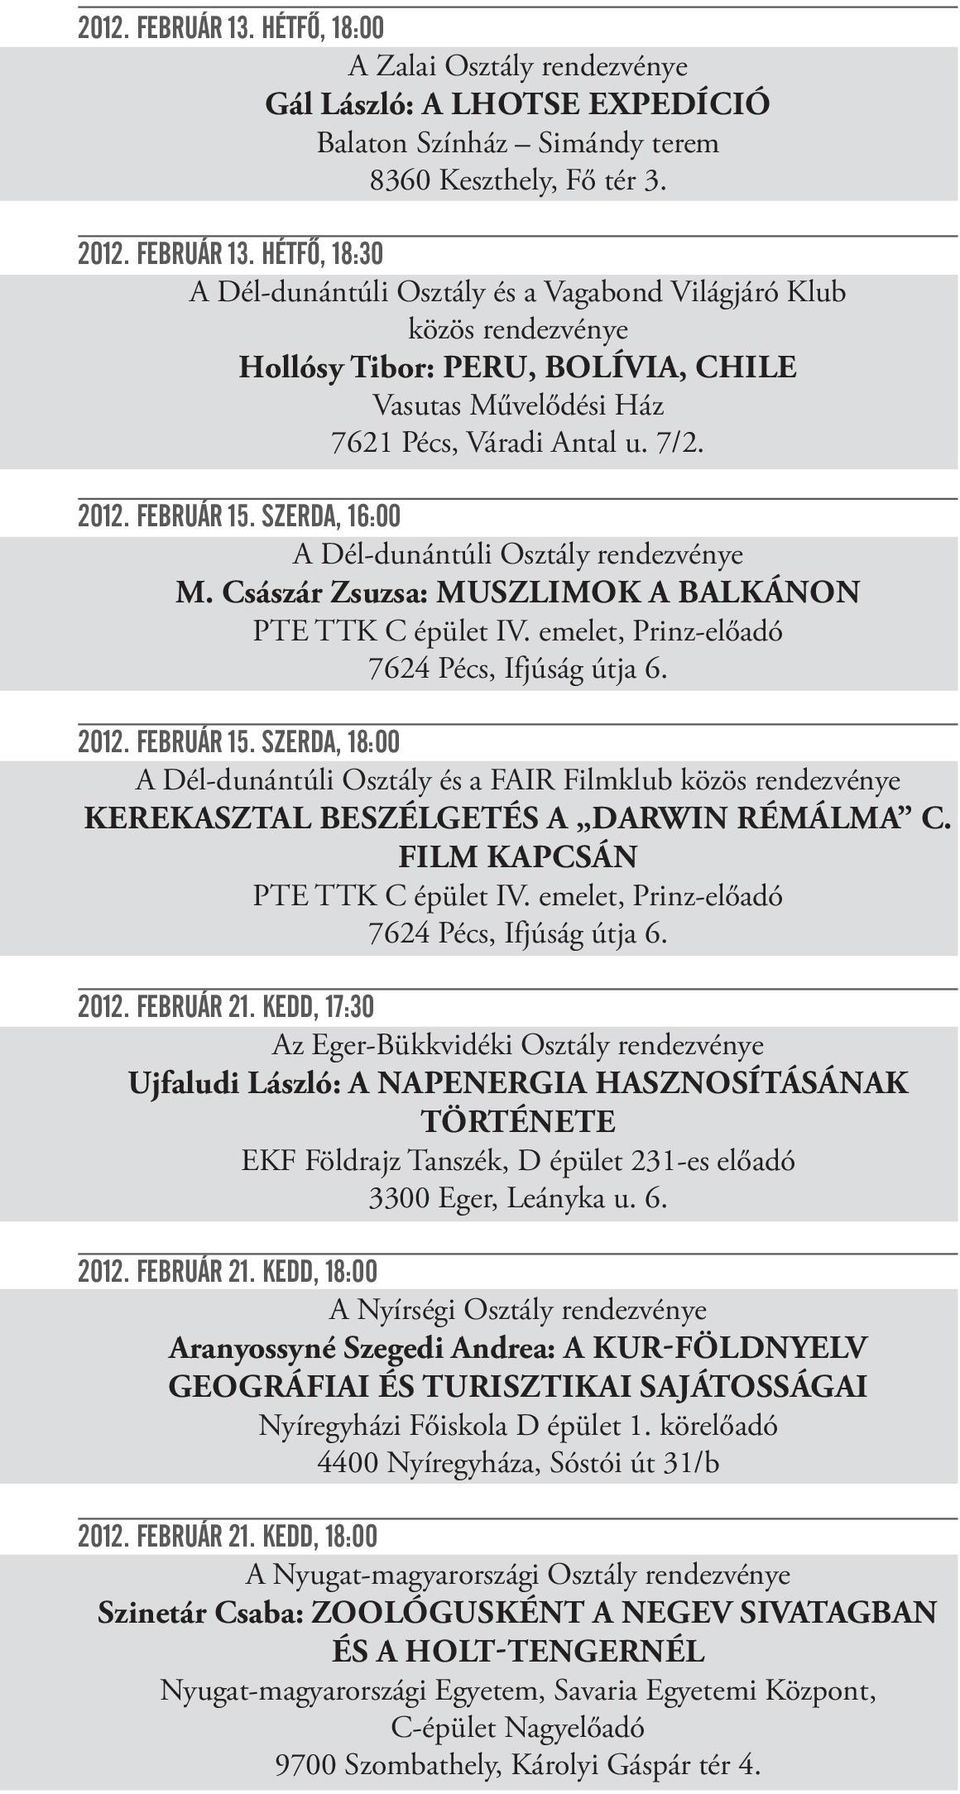 FILM KAPCSÁN 2012. FEBRUÁR 21.